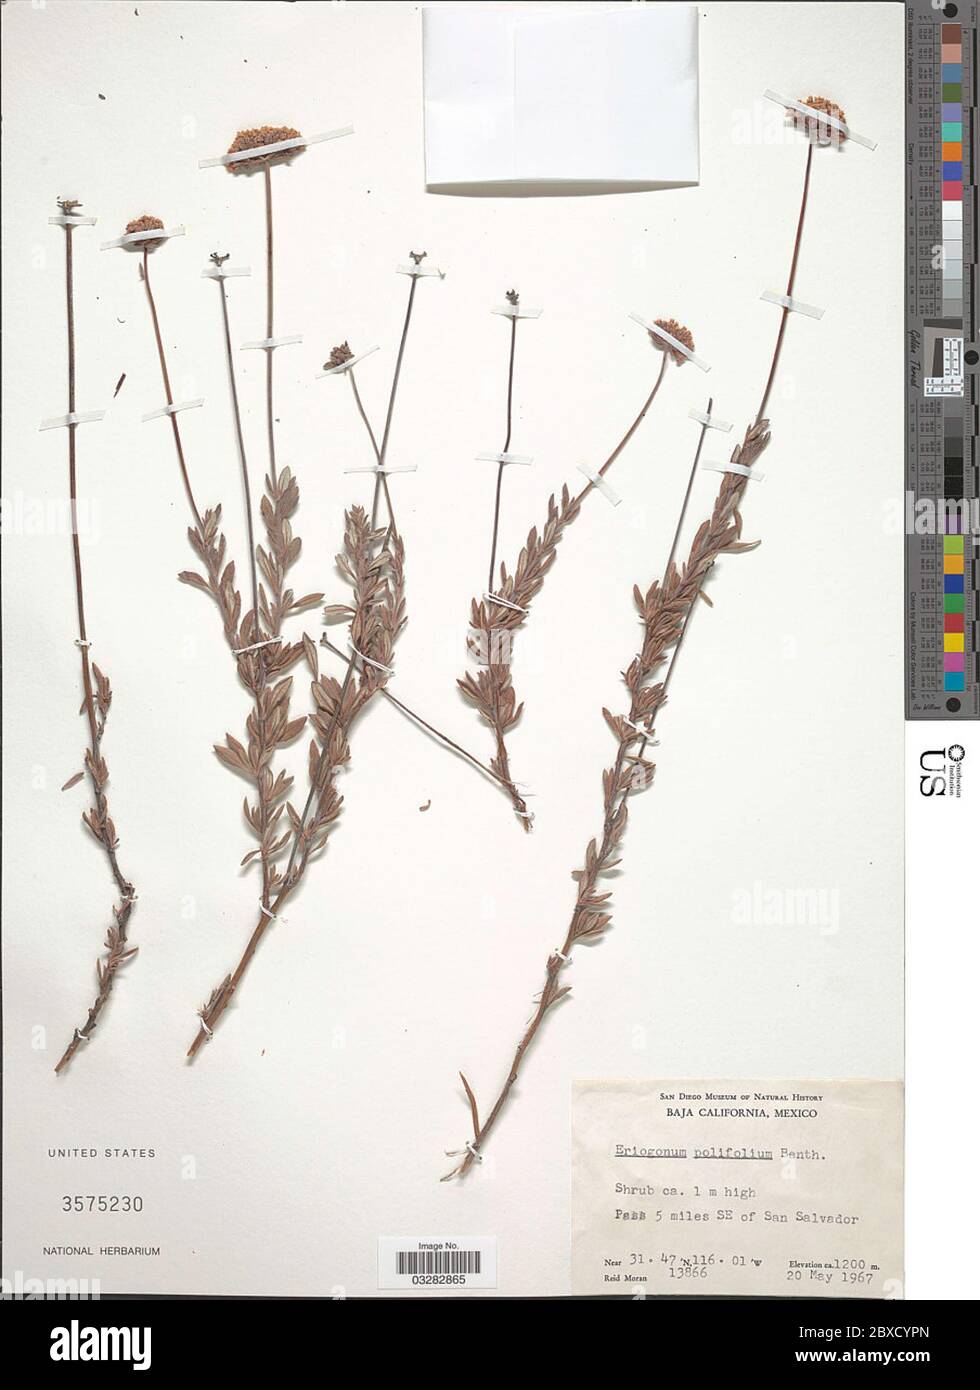 Eriogonum polifolium Benth Eriogonum polifolium Benth. Stock Photo